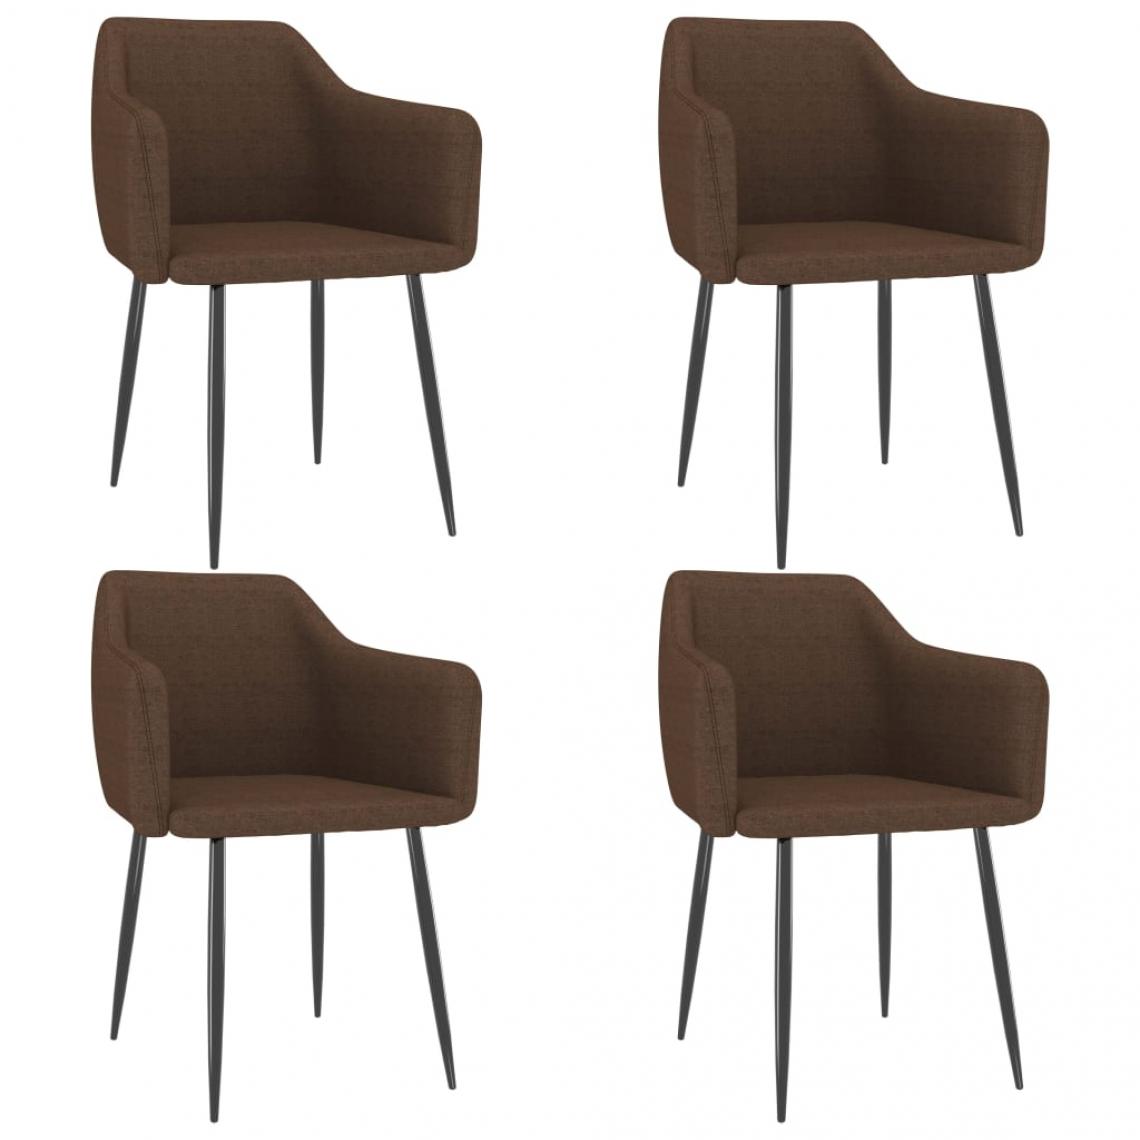 Decoshop26 - Lot de 4 chaises de salle à manger cuisine design moderne tissu marron CDS021757 - Chaises